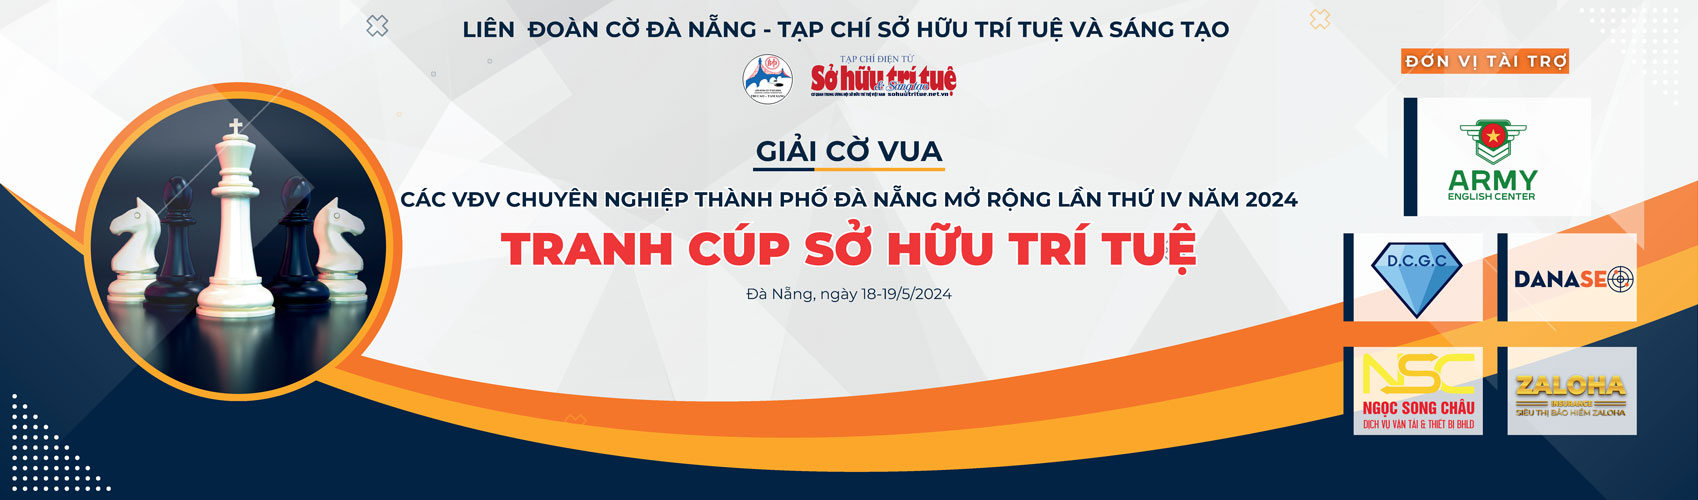 Giải cờ Vua các Vận động viên chuyên nghiệp thành phố Đà Nẵng lần thứ IV năm 2024 - Tranh cúp Sở hữu trí tuệ